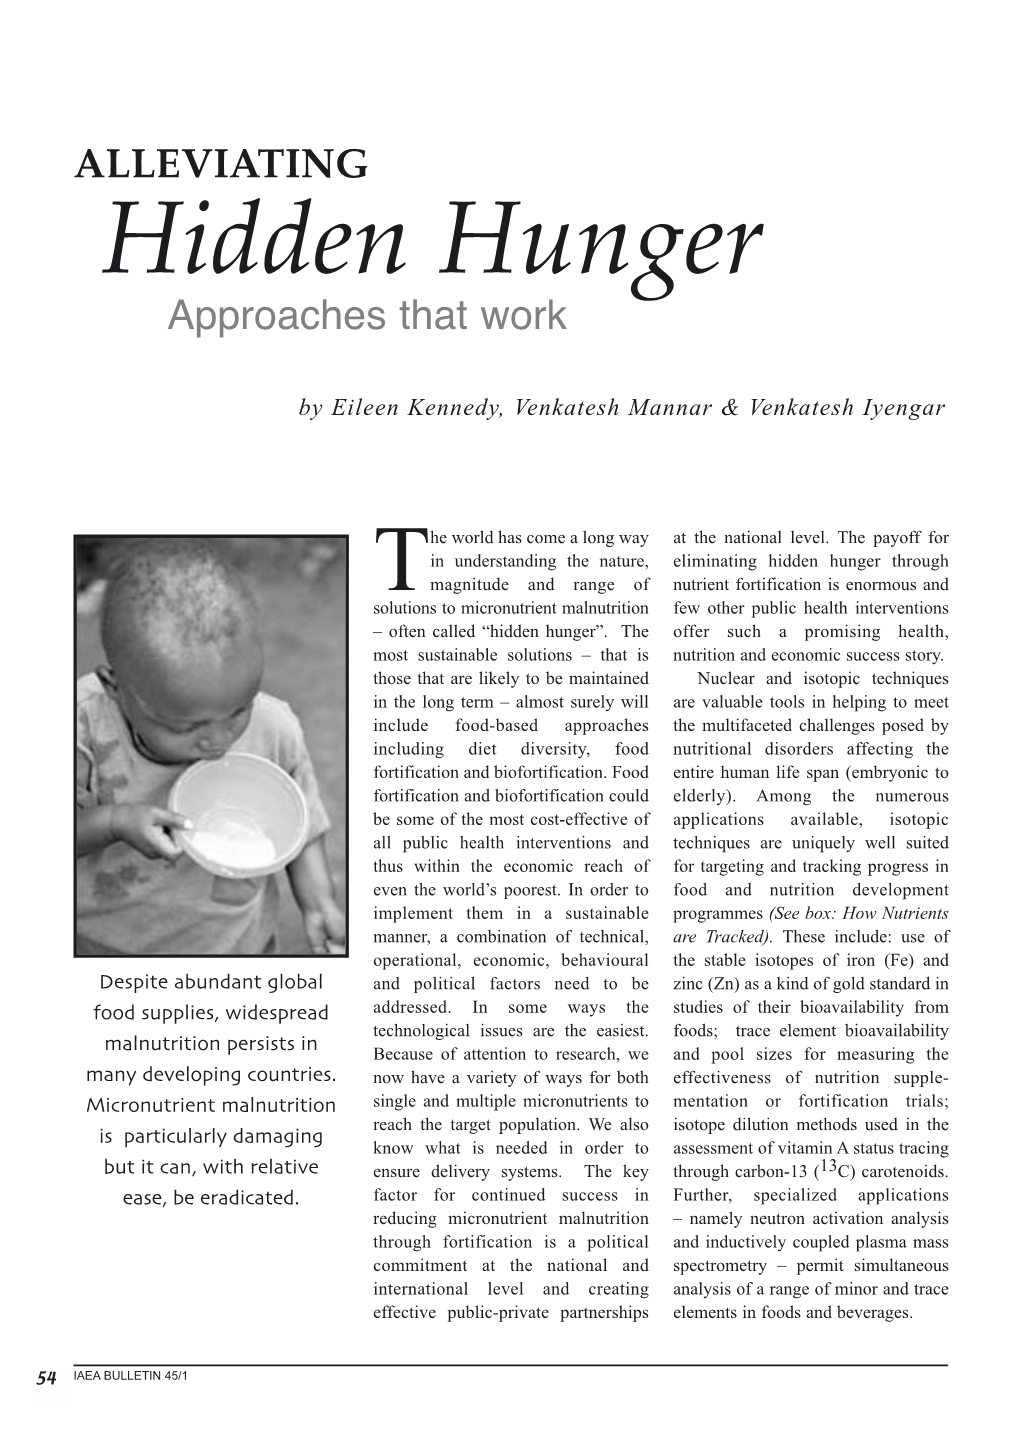 Hidden Hunger Approaches That Work